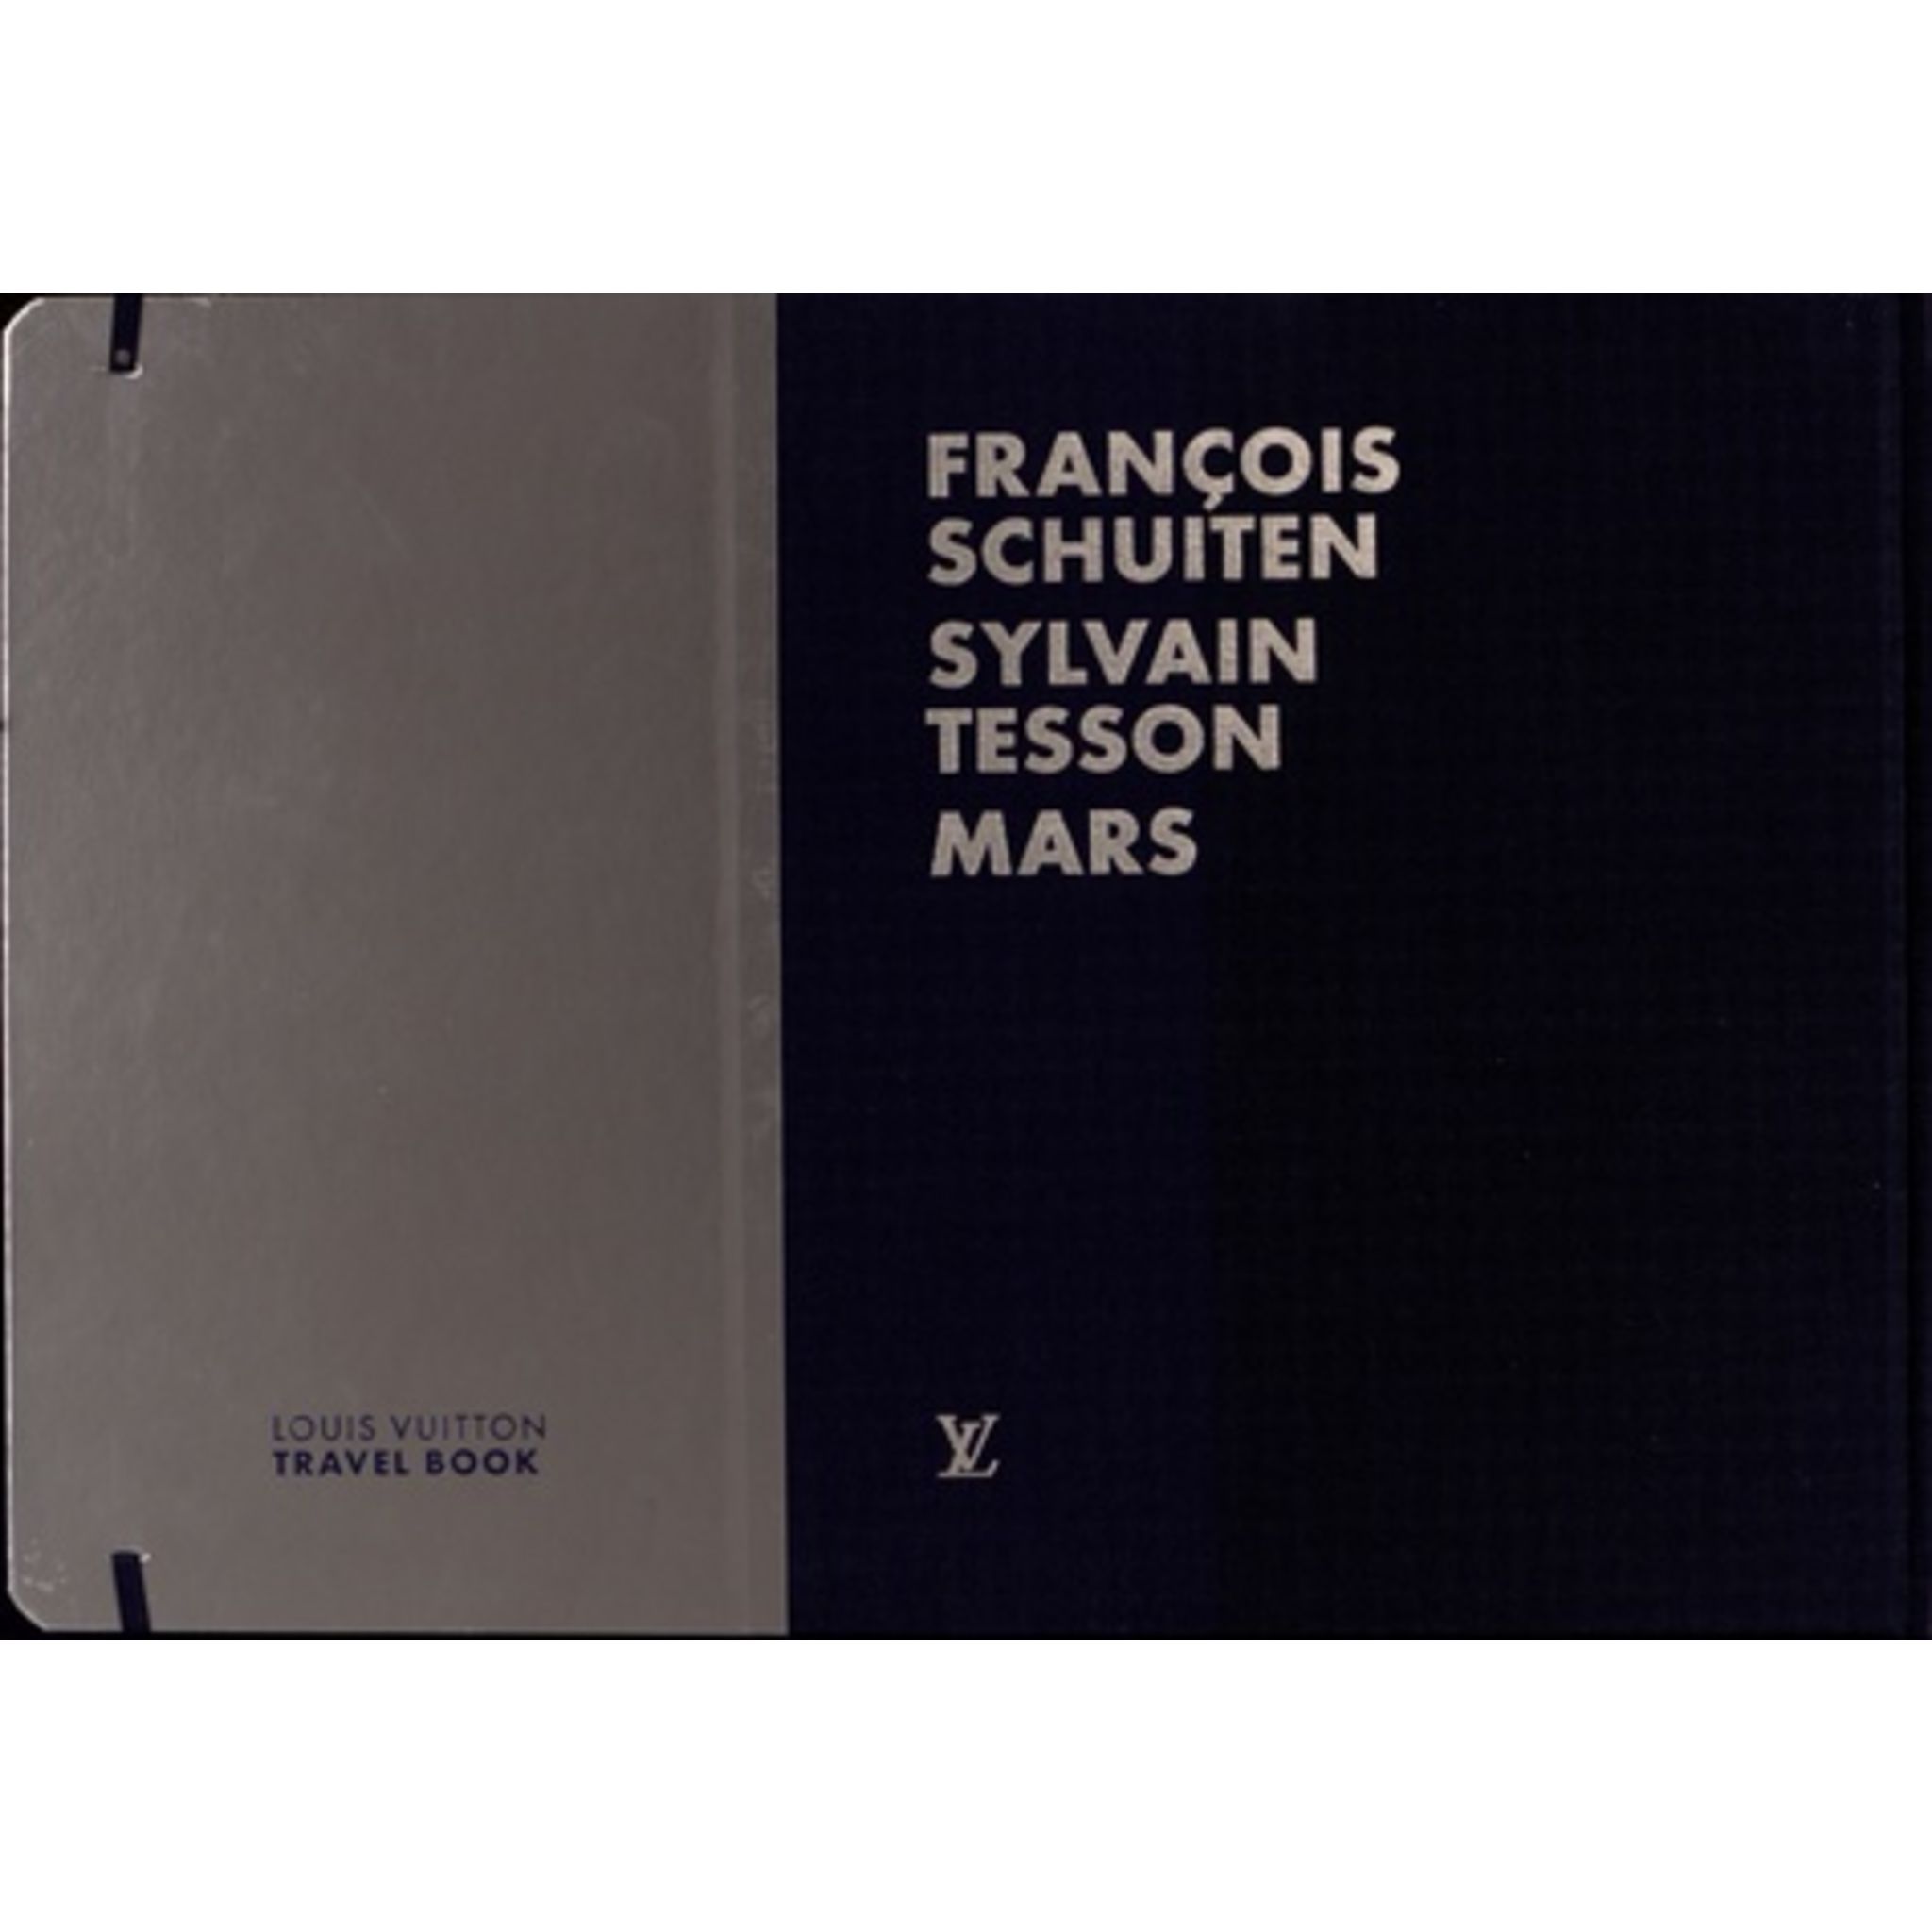 Louis Vuitton TRAVEL BOOK MARS Tesson Schuiten